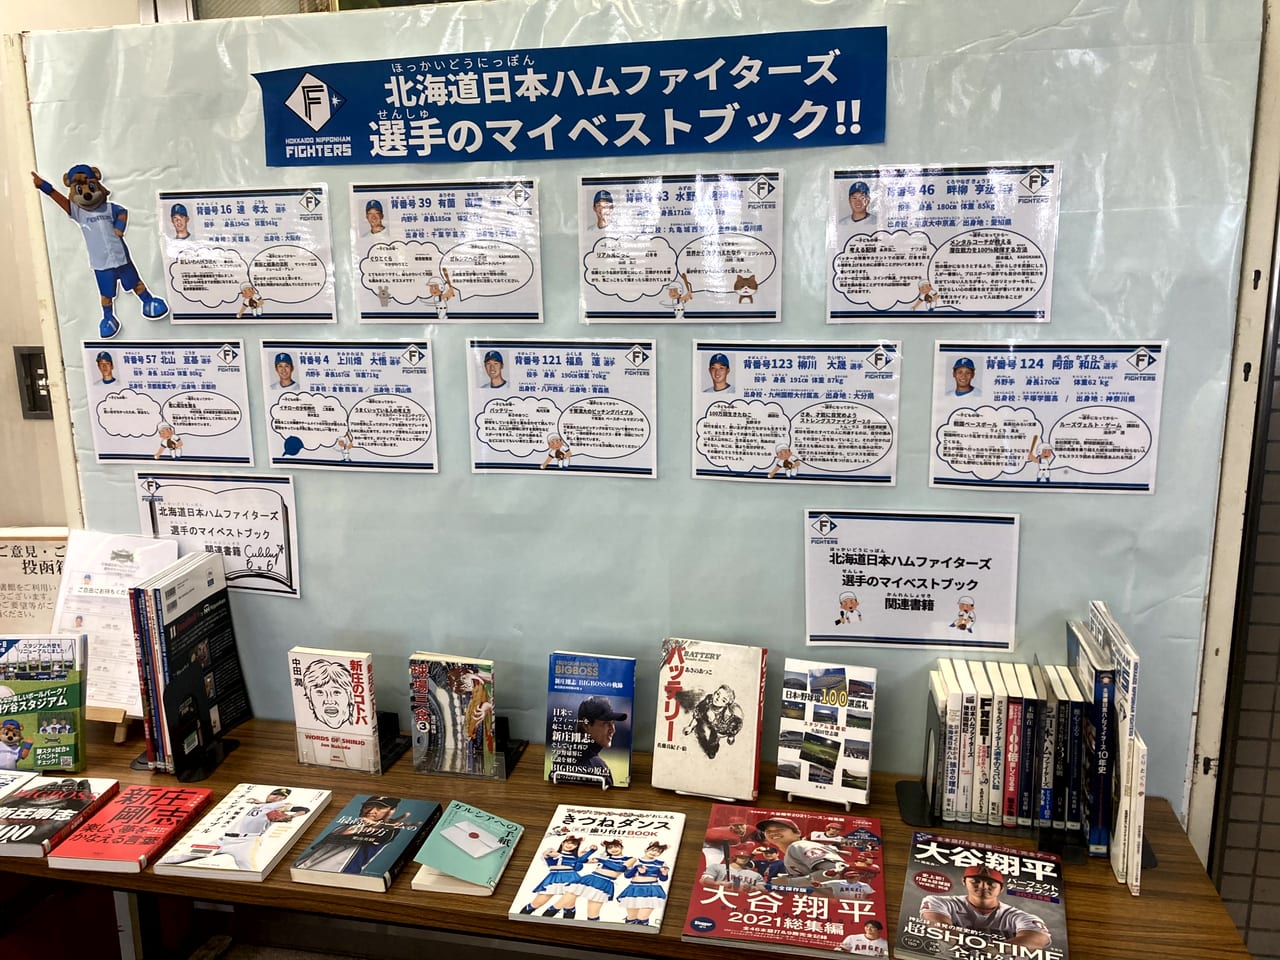 鎌ケ谷市立図書館日本ハムファイターズ選手のオススメ本の紹介